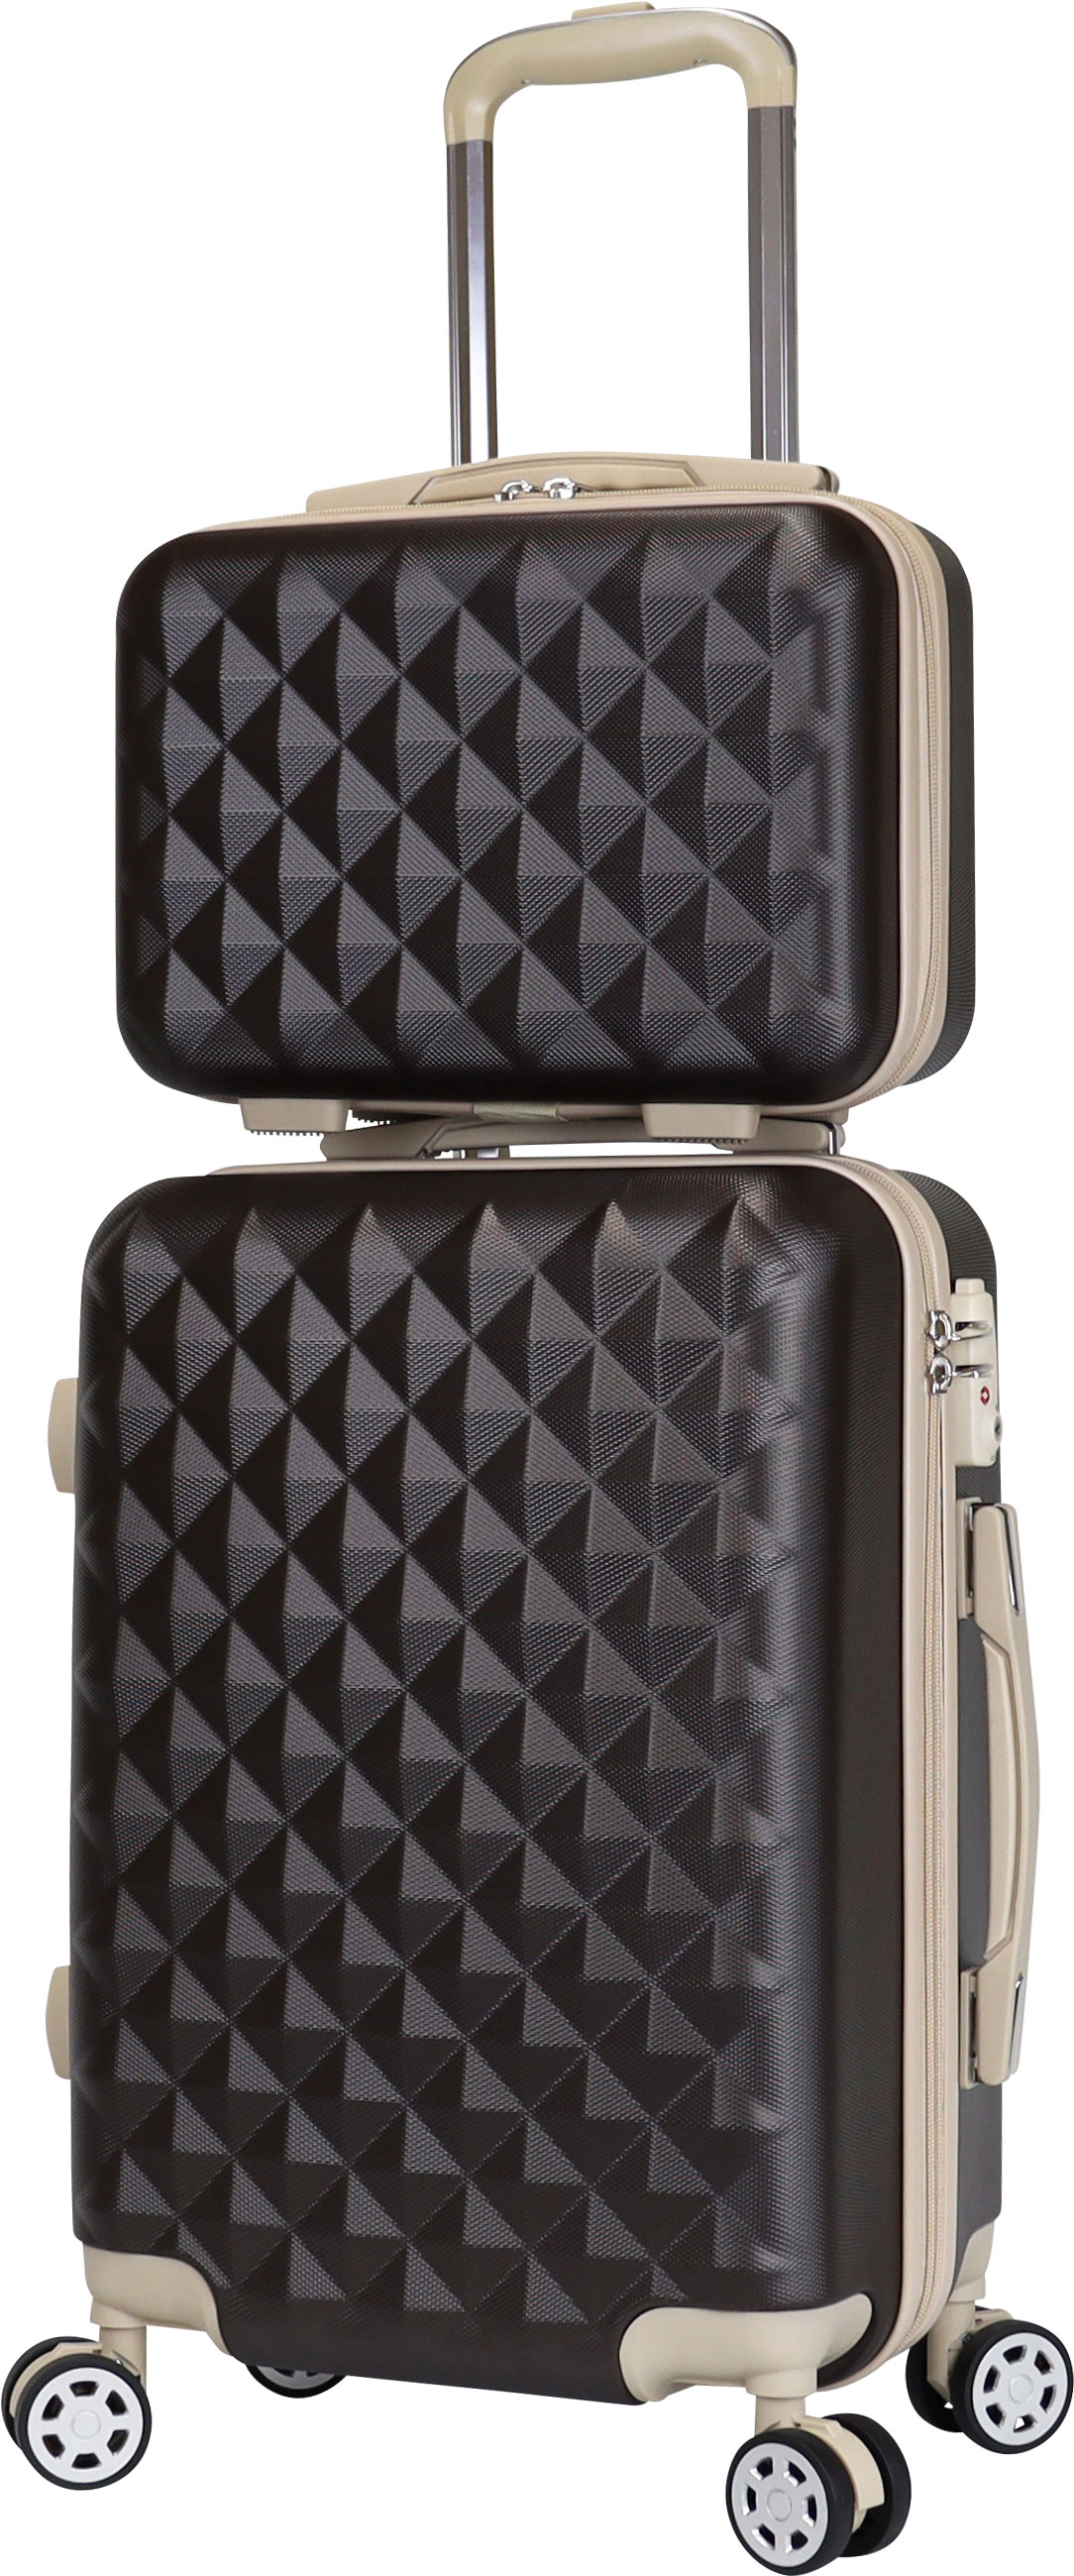 信用 スーツケース おすすめ 機内持ち込み キャリーバック basilo-012 ミニトランクセット 小型 おしゃれ TSA SSサイズ キルト風  かわいい キャリーケース 軽量 スーツケース、キャリーバッグ